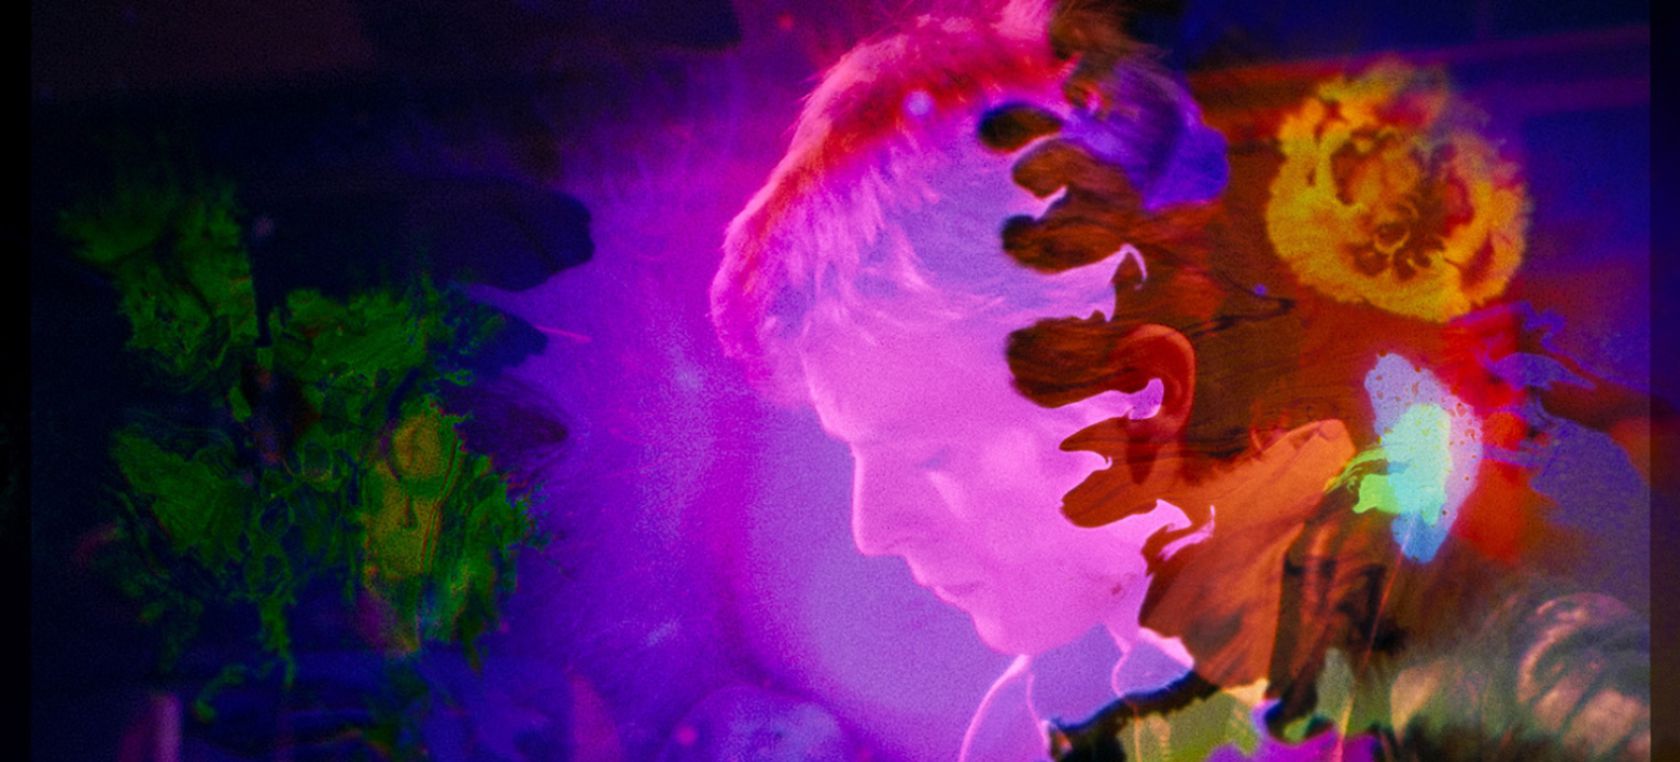 LOS40 Classic te invita al preestreno exclusivo de ‘Moonage daydream’, el nuevo documental sobre David Bowie